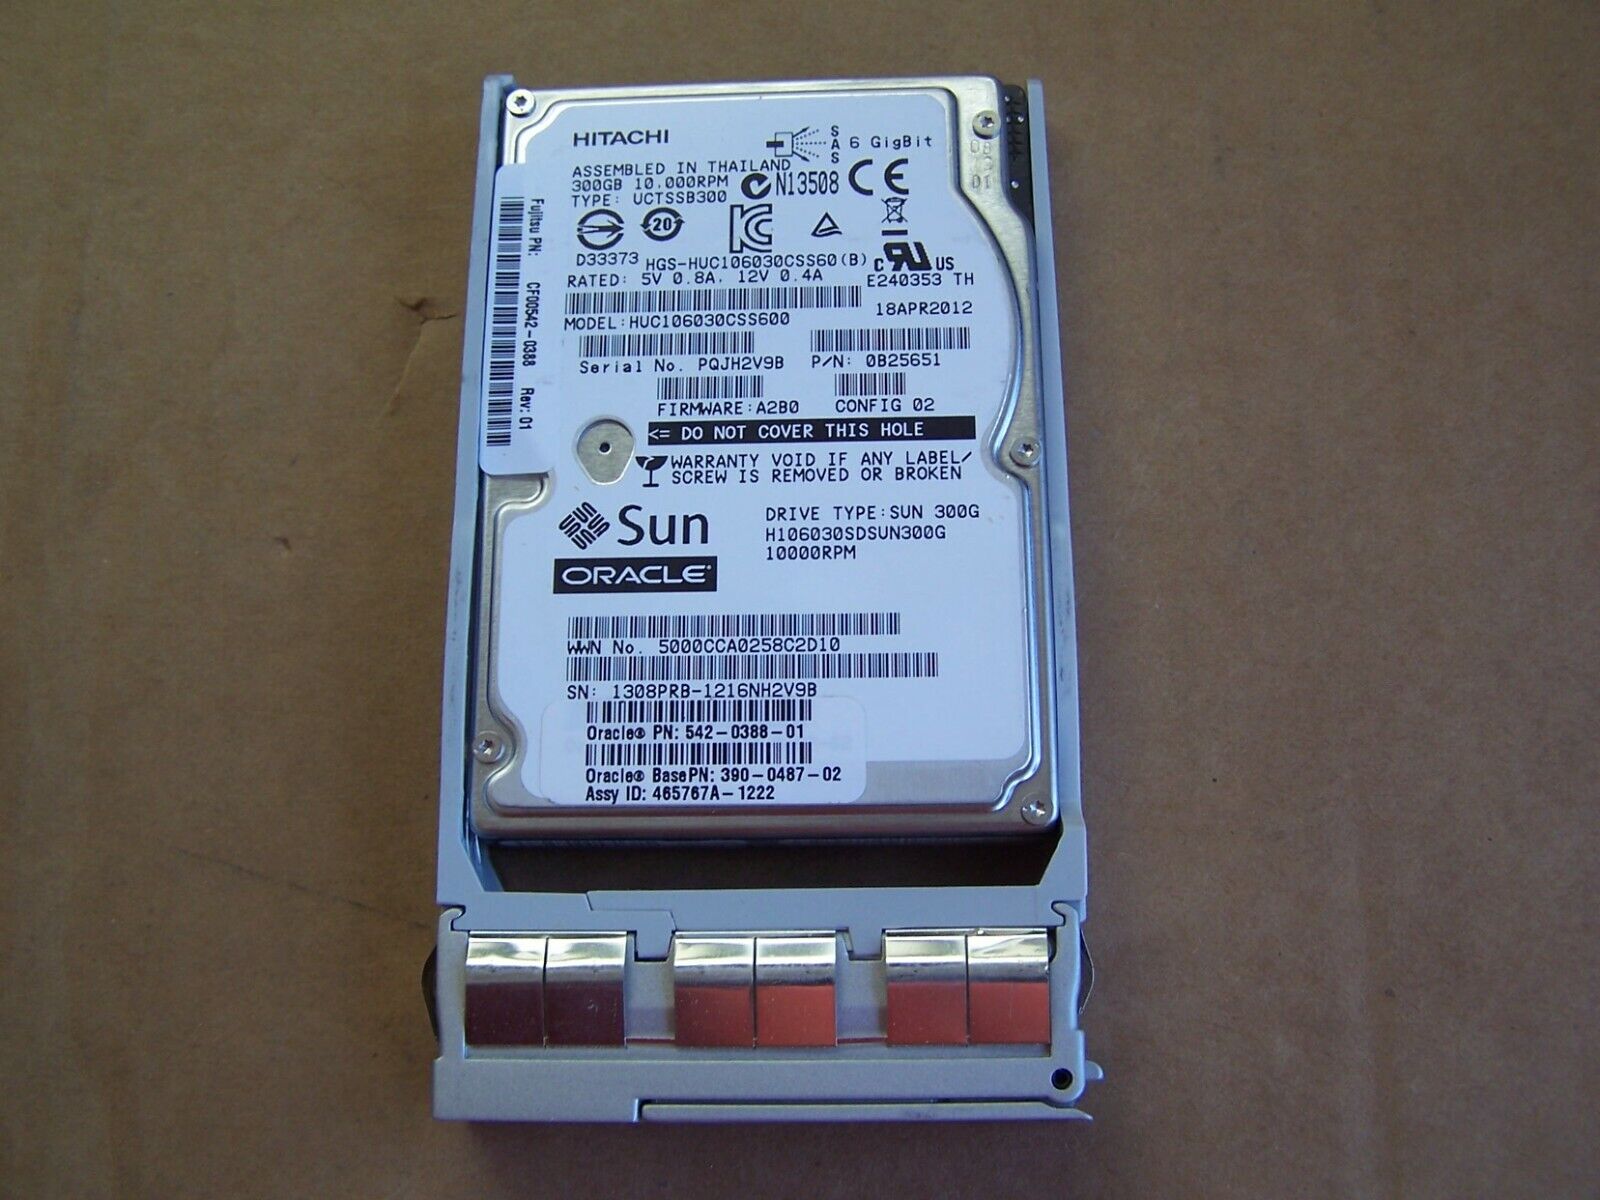 Sun Oracle 542-0388-01 390-0487 300GB 10K RPM SAS HDD Hitachi Huc106030css600